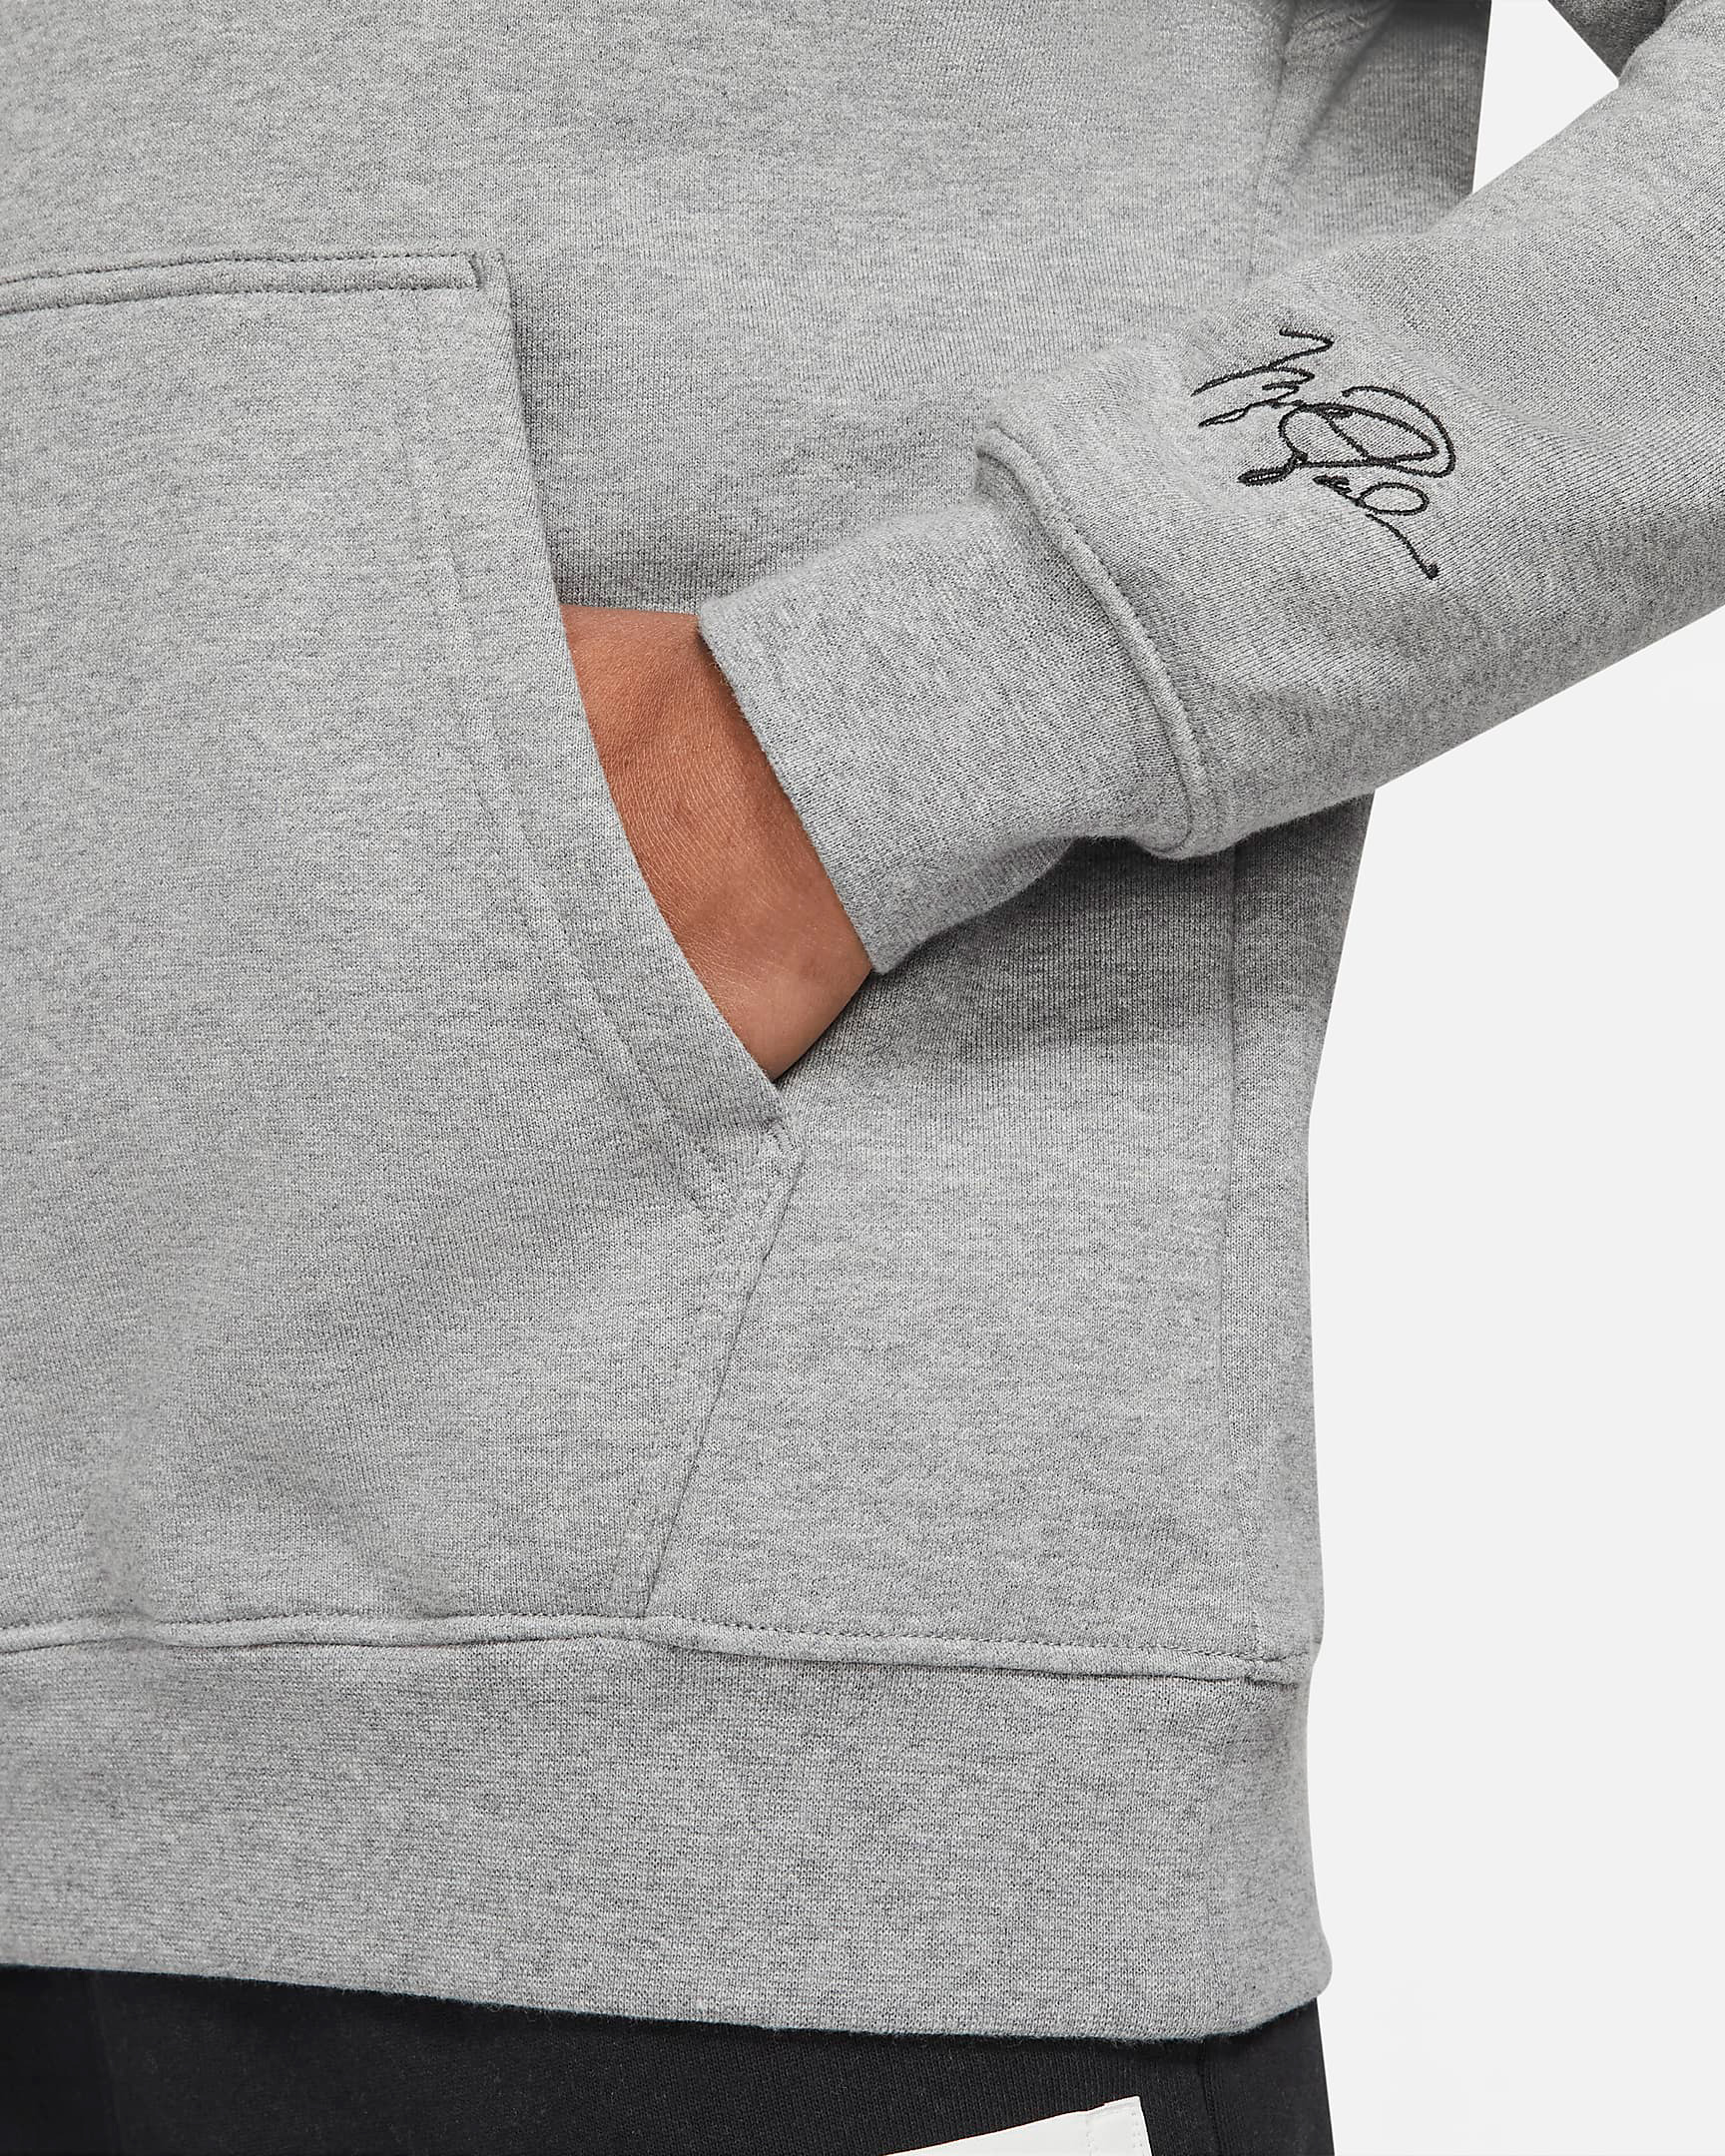 air-jordan-11-cool-grey-2021-pullover-hoodie-3